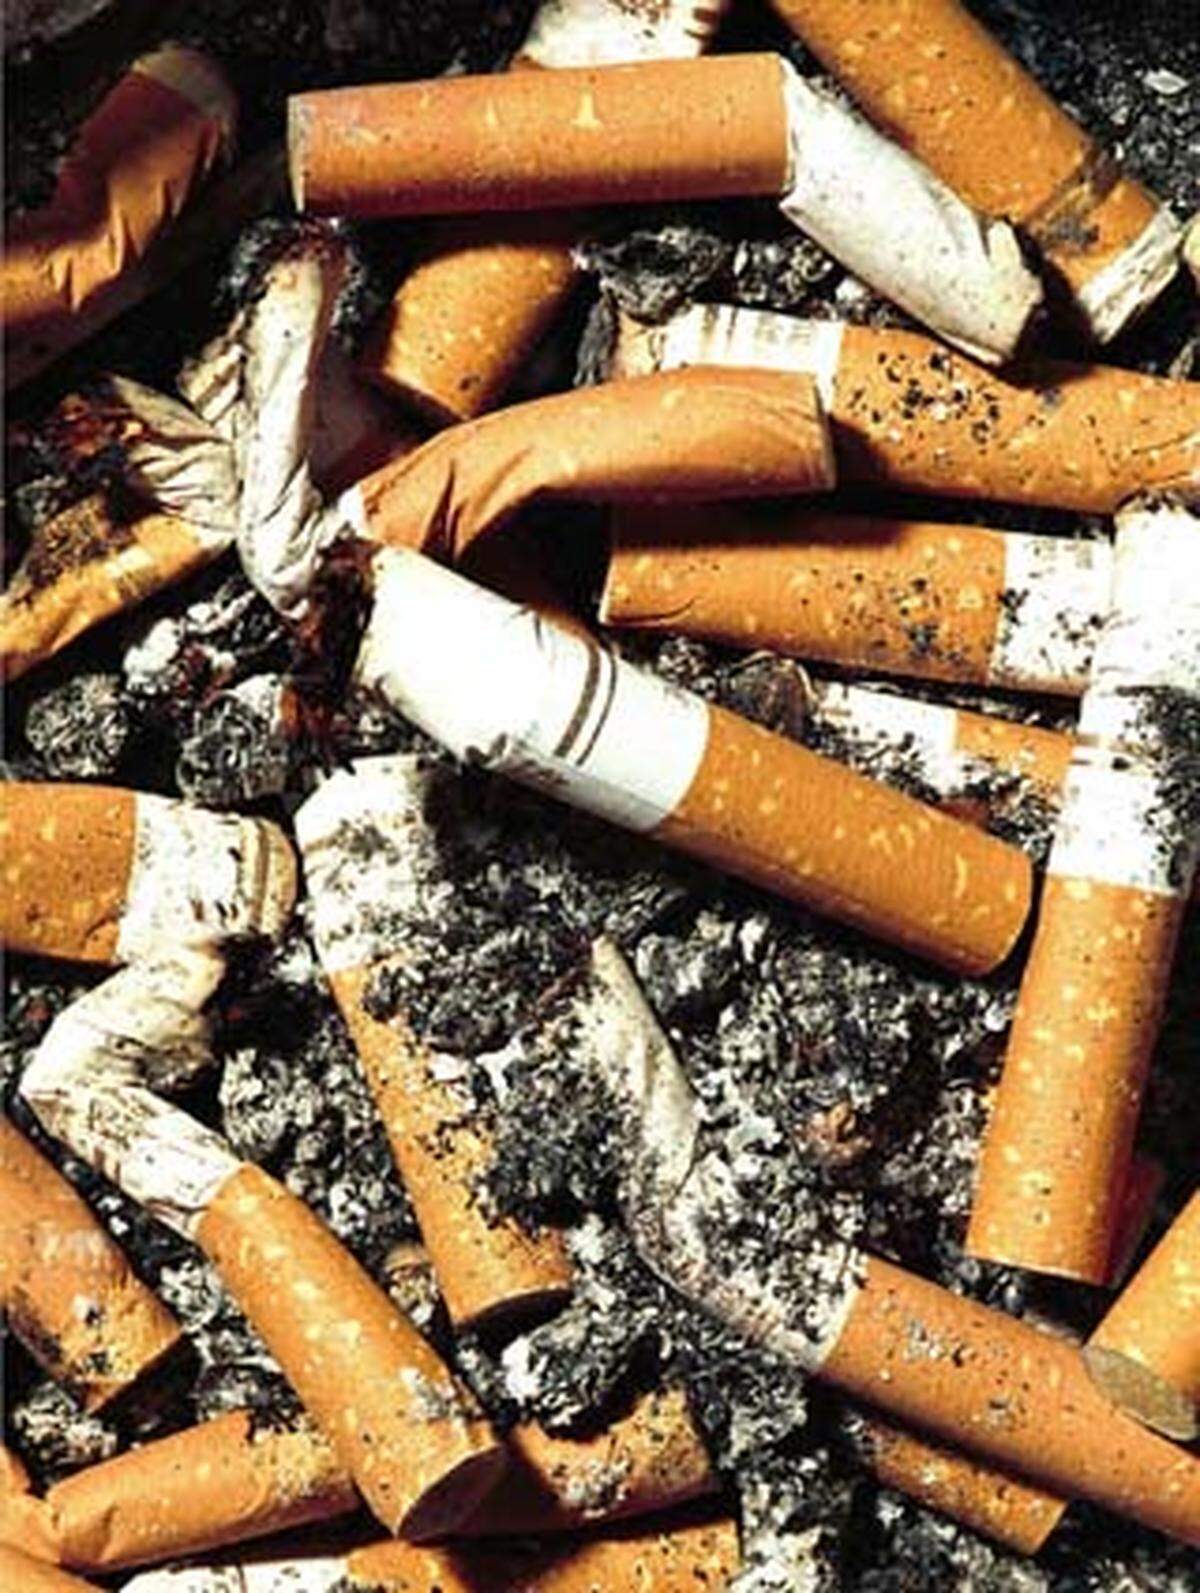 Der vor allem durch das Rauchen verursachte Lungen- und Atemwegskrebs reihte sich auf Platz acht ein. 1,3 Millionen Tote (2,3 Prozent) gingen auf das Konto dieser Erkrankung. Der Lungenkrebs löschte 2004 also eine Stadt in der Größe von München aus.